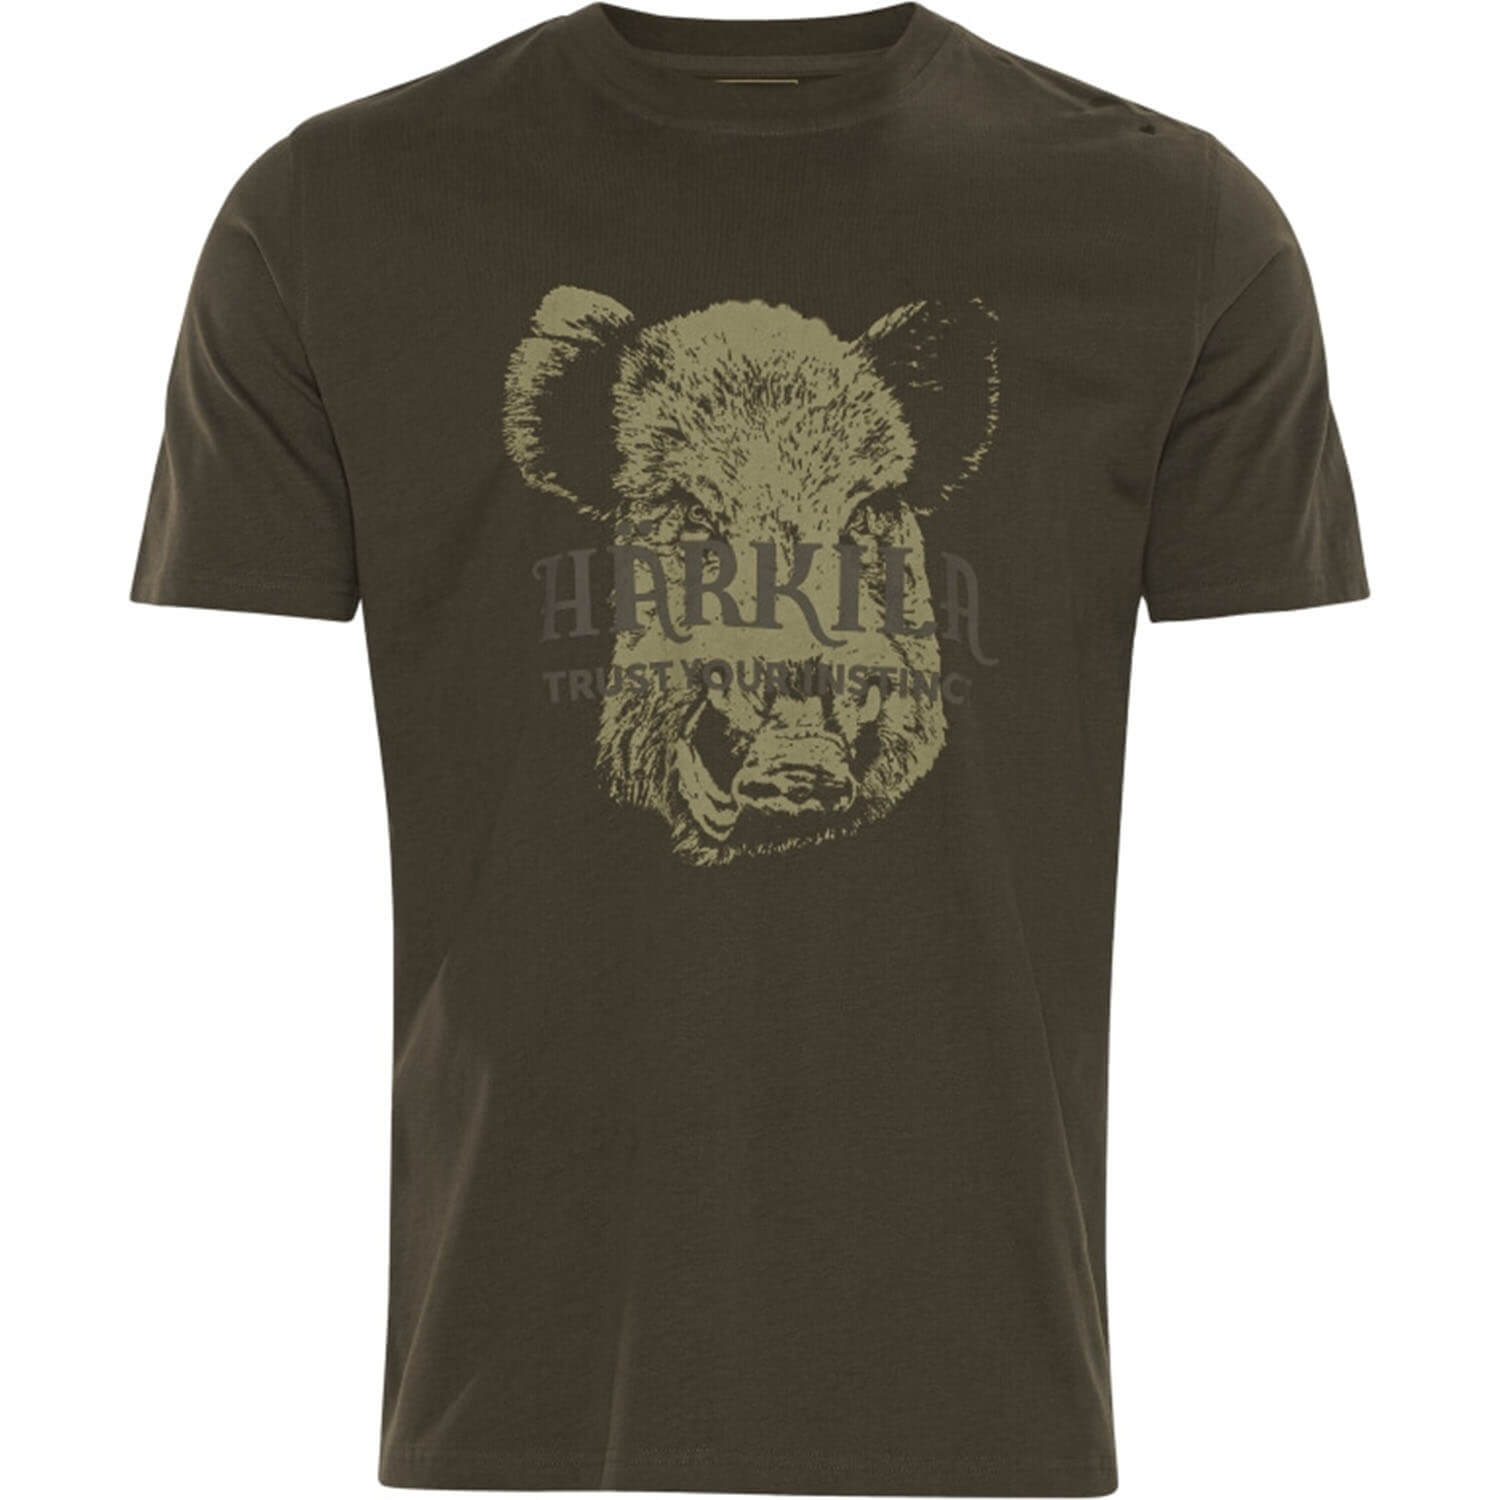 Härkila T-Shirt 2er-pack Odin Limited Edition - Hemden & Shirts